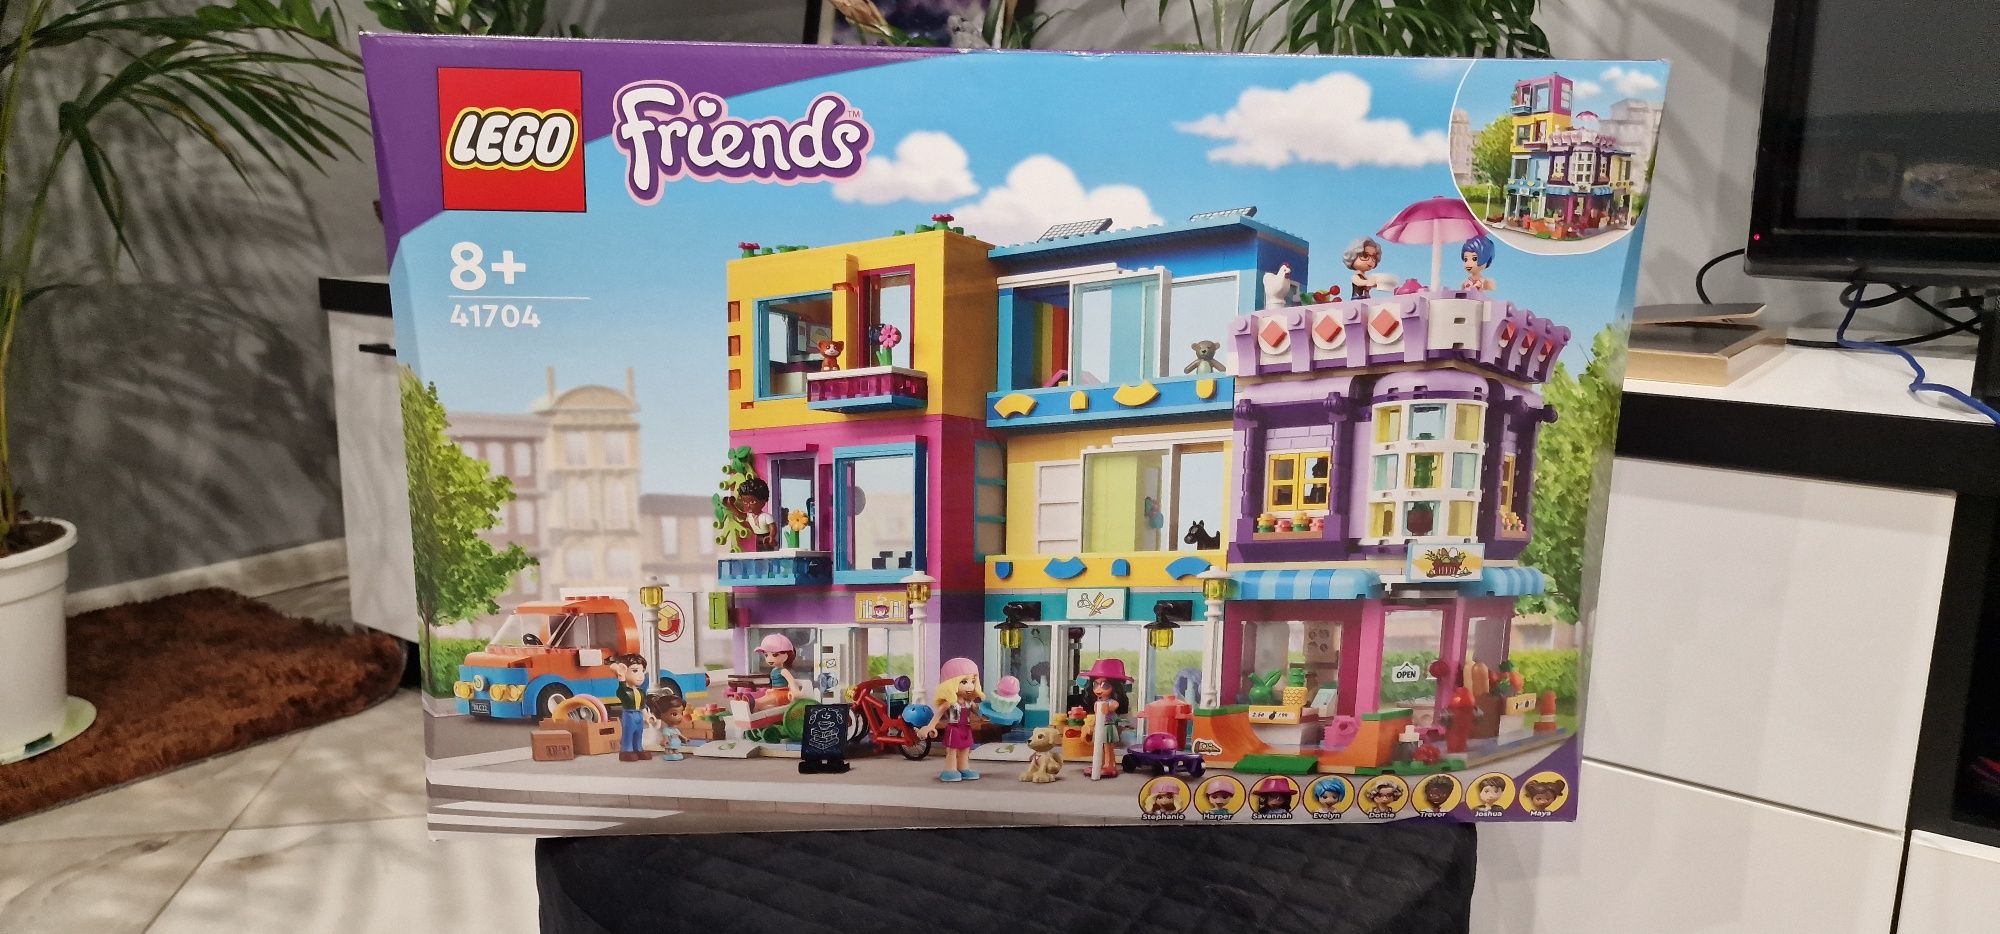 LEGO Friends 41704 Budynki przy głównej ulicy